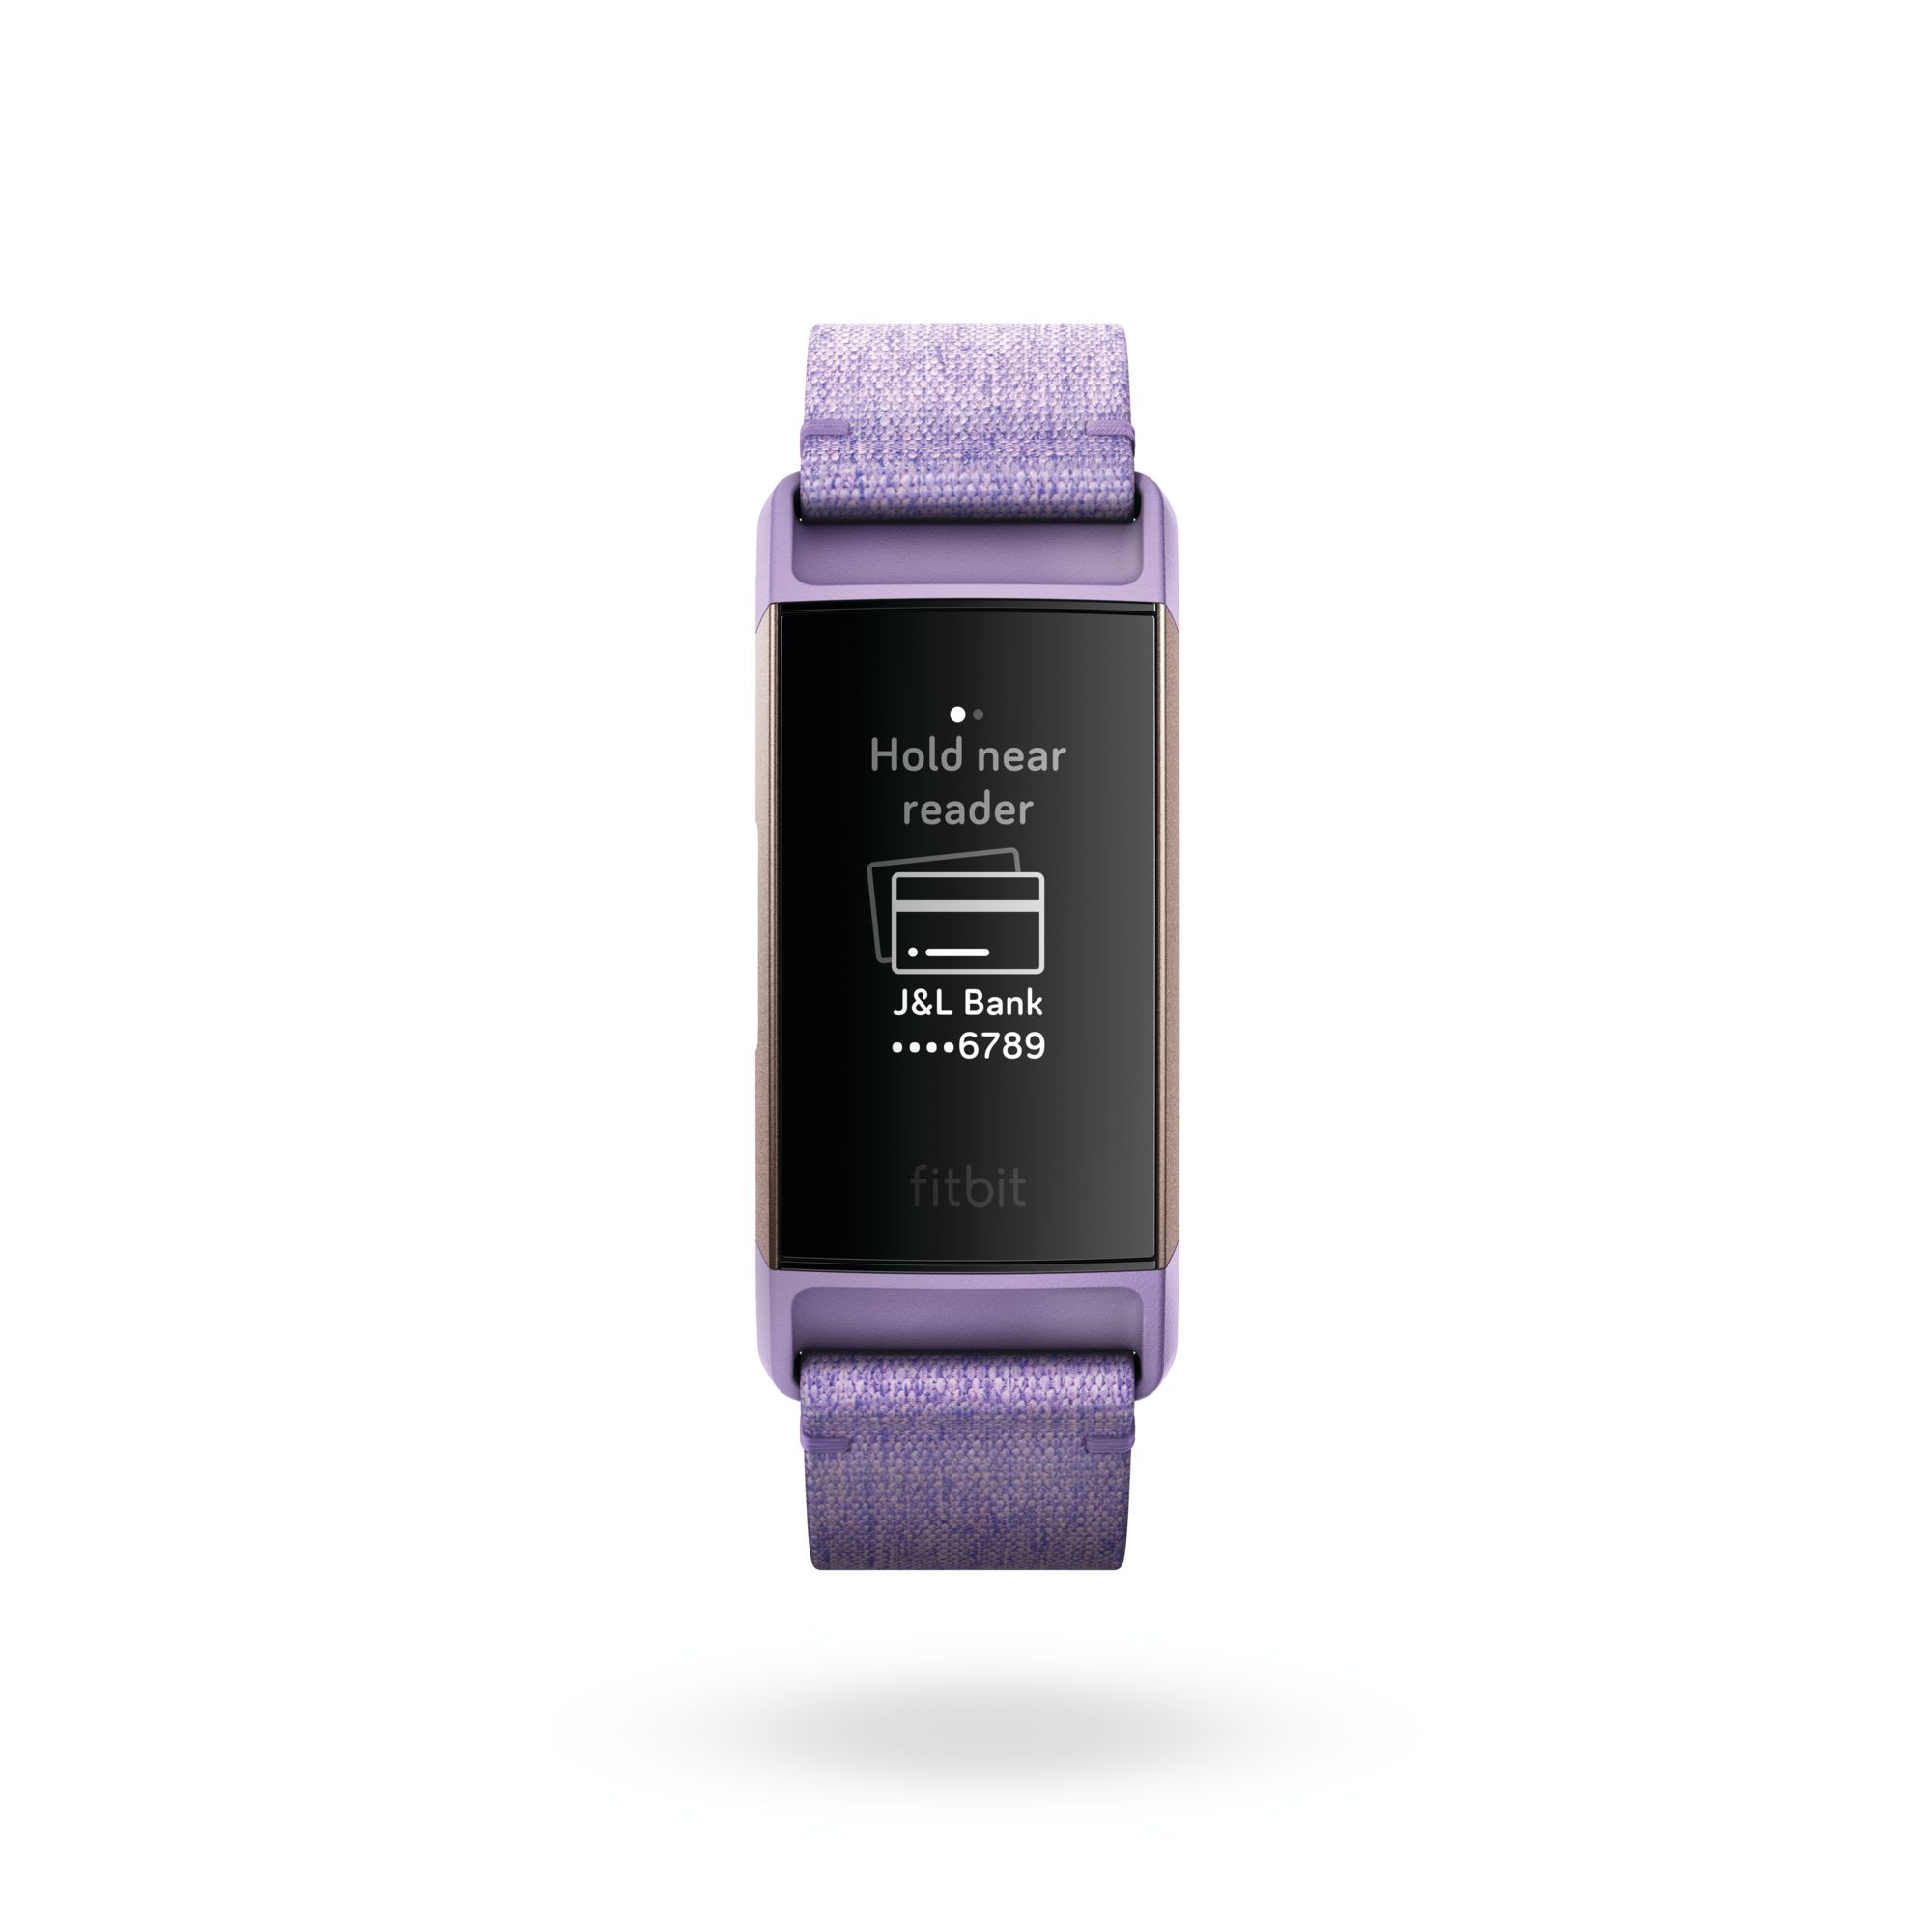 Fitbit Charge 3 fitness pás s obrazovkou plateb.